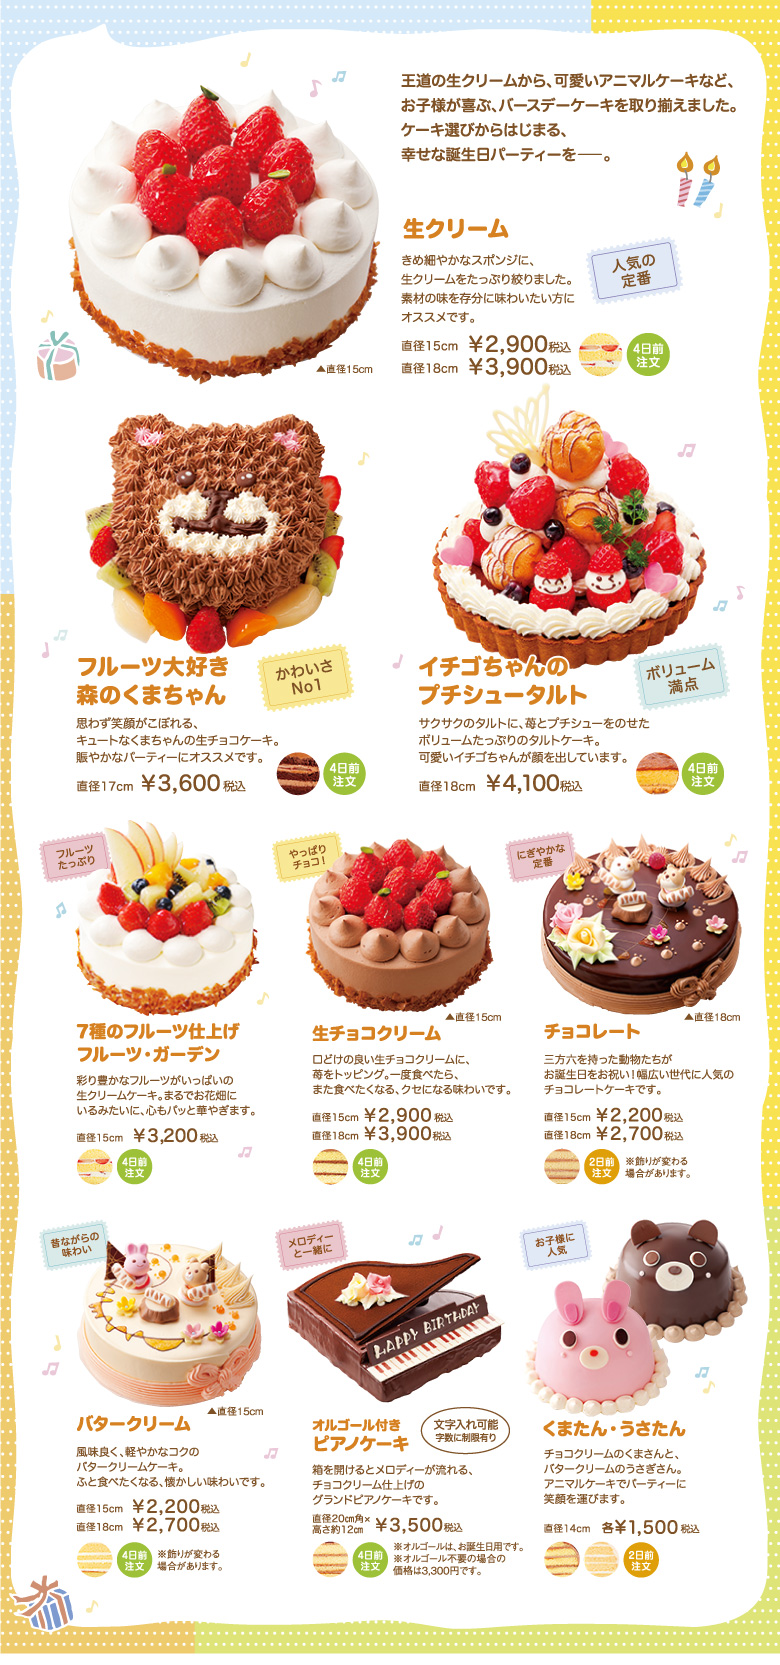 Ryugetsu Birthdaycake 柳月バースデーケーキ